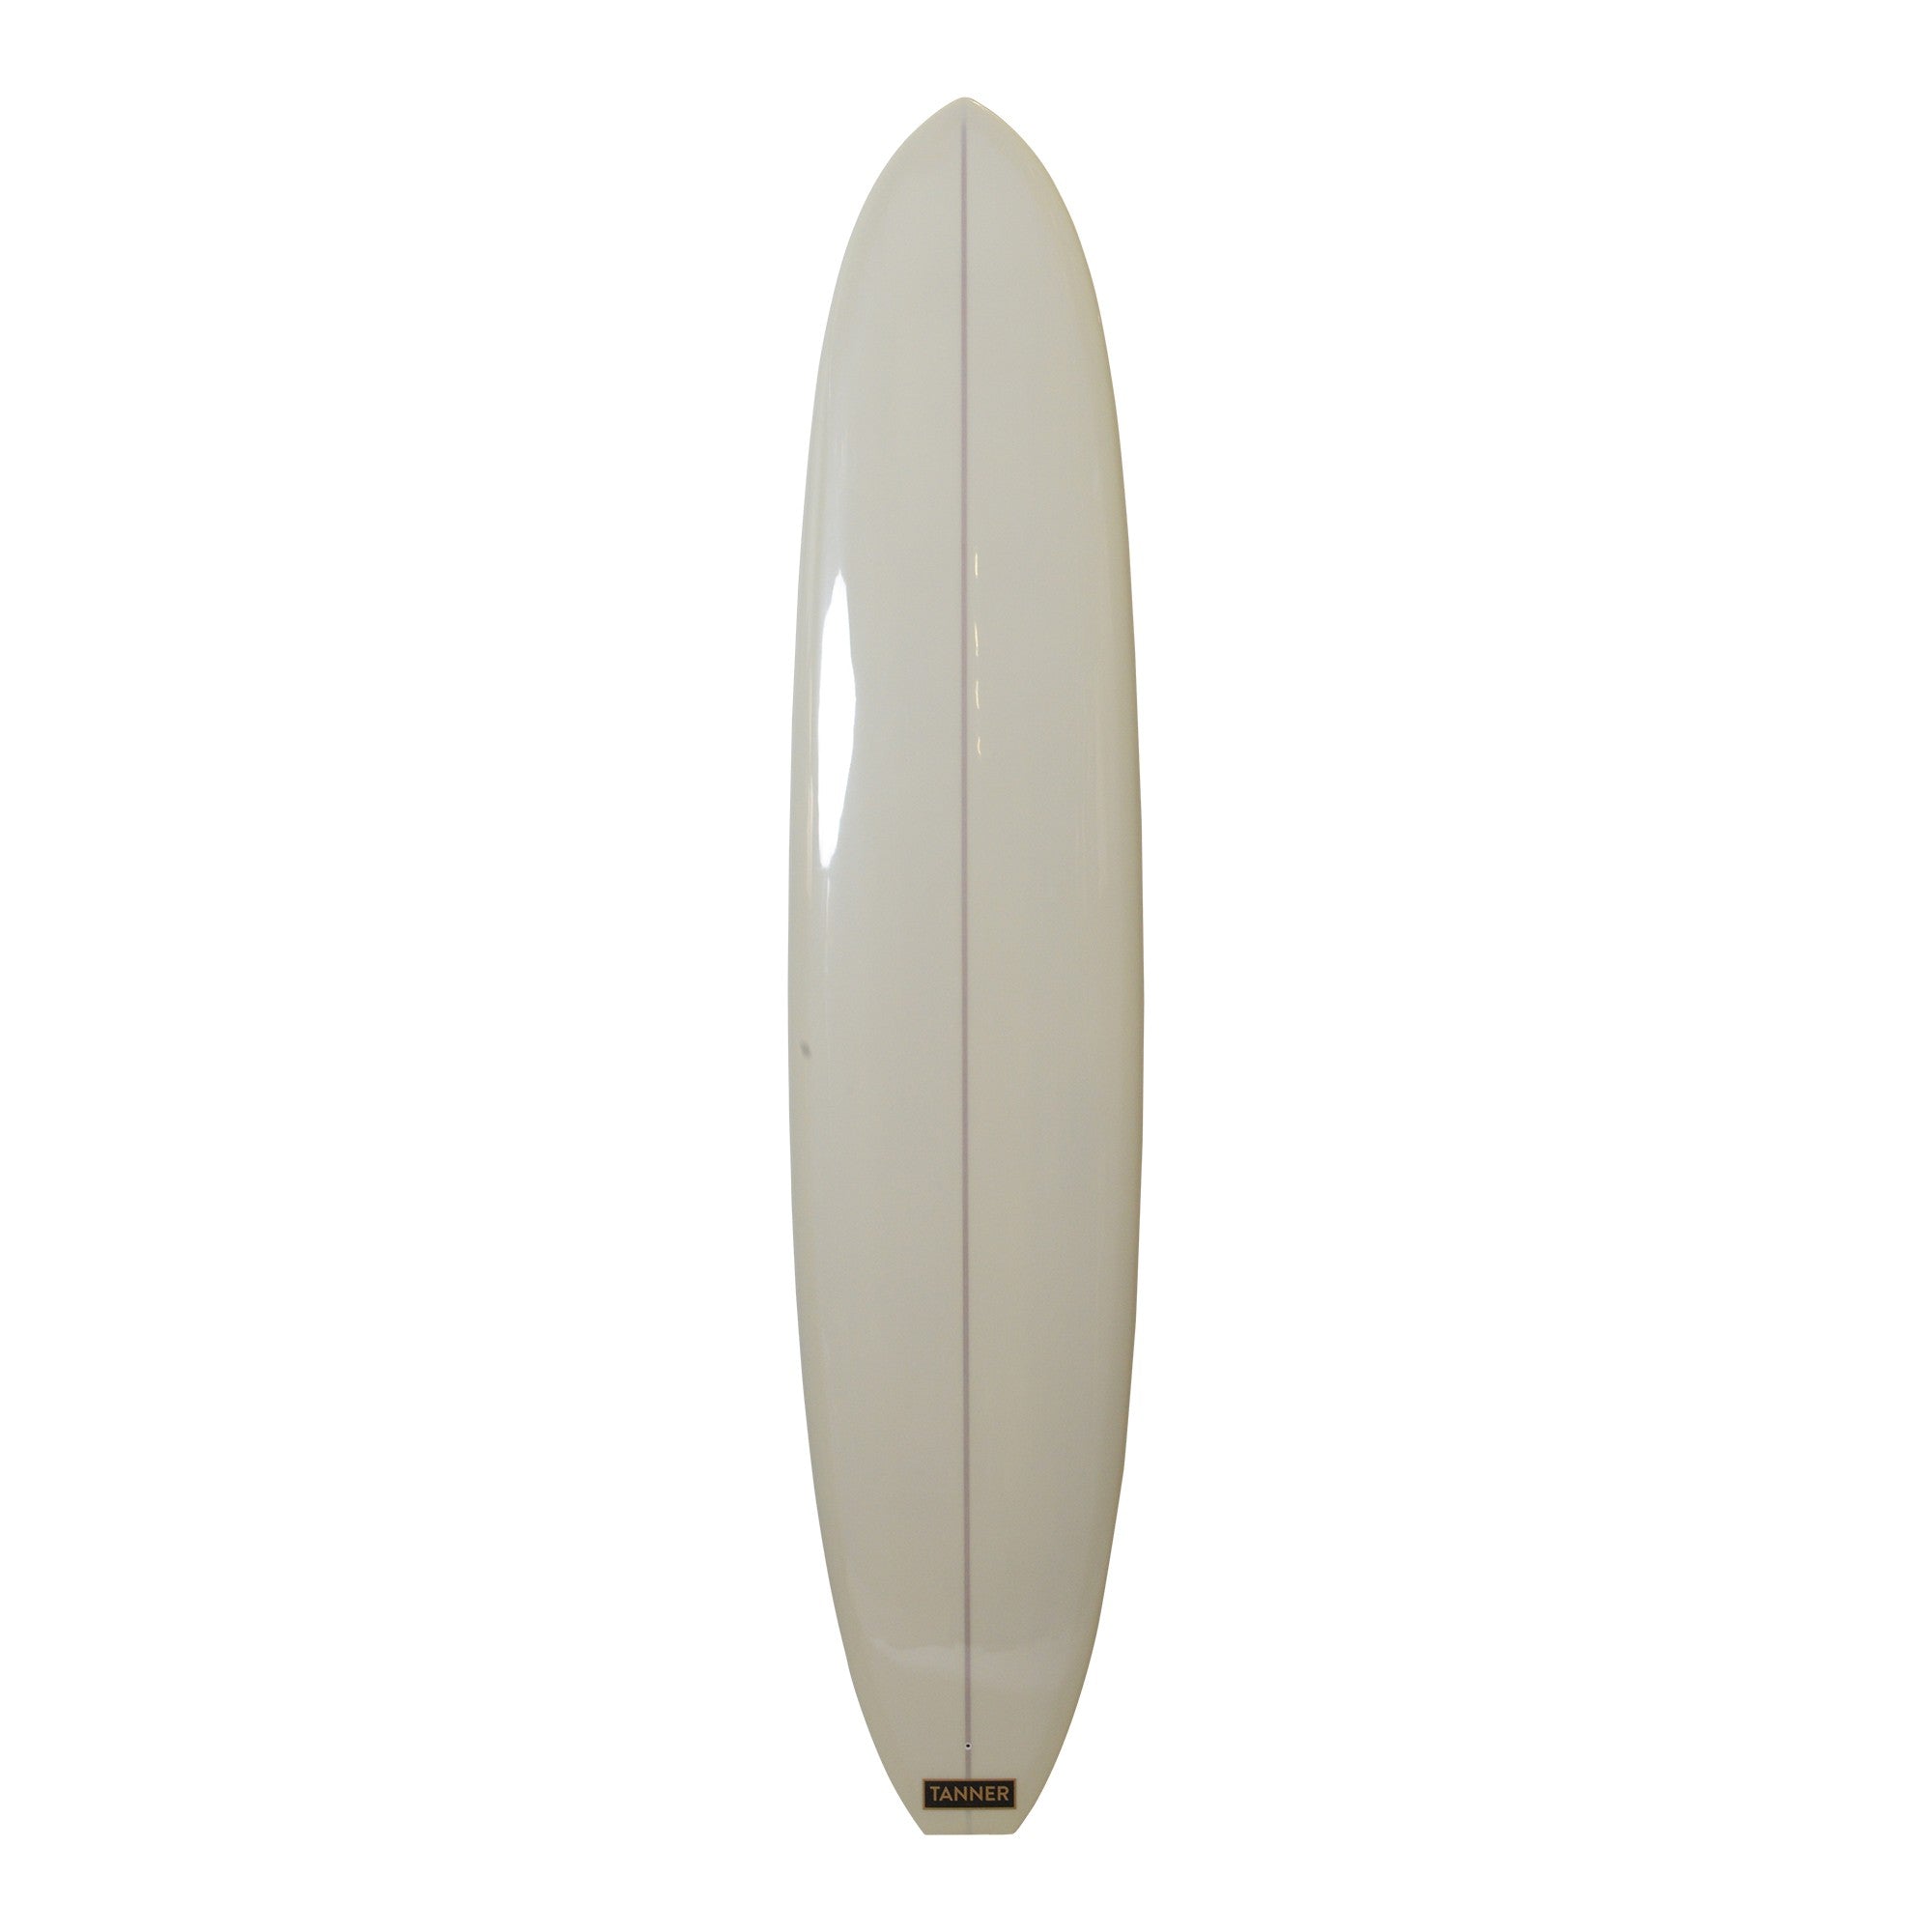 TANNER SURFBOARDS - Longboard Martini - 9'4 (PU) - Crema